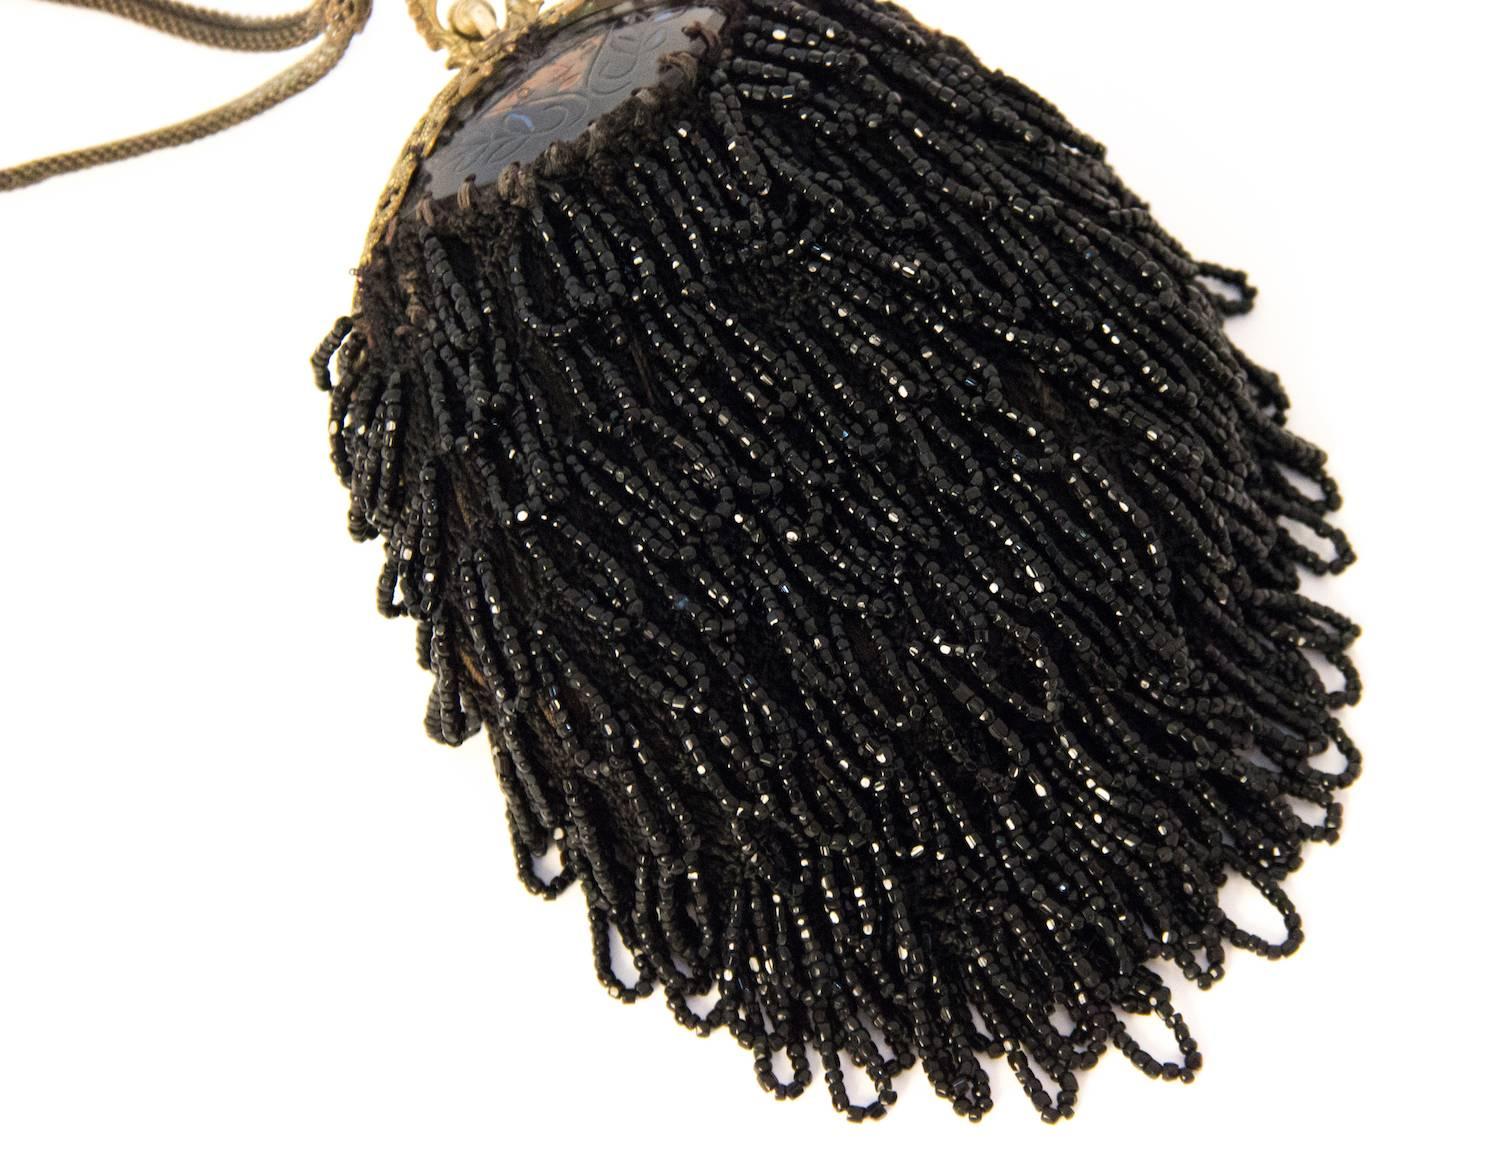 1890er Jahre viktorianischen schwarzen Perlen Tasche mit ungewöhnlichen handgeschnitzten Rahmen Verzierung. Filigraner Metallrahmen. Riemen aus Metallgewebe. Gefüttert mit dunkelolivgrüner Baumwolle. 

Abmessungen:

Körper des Beutels: ca. 6 x 4